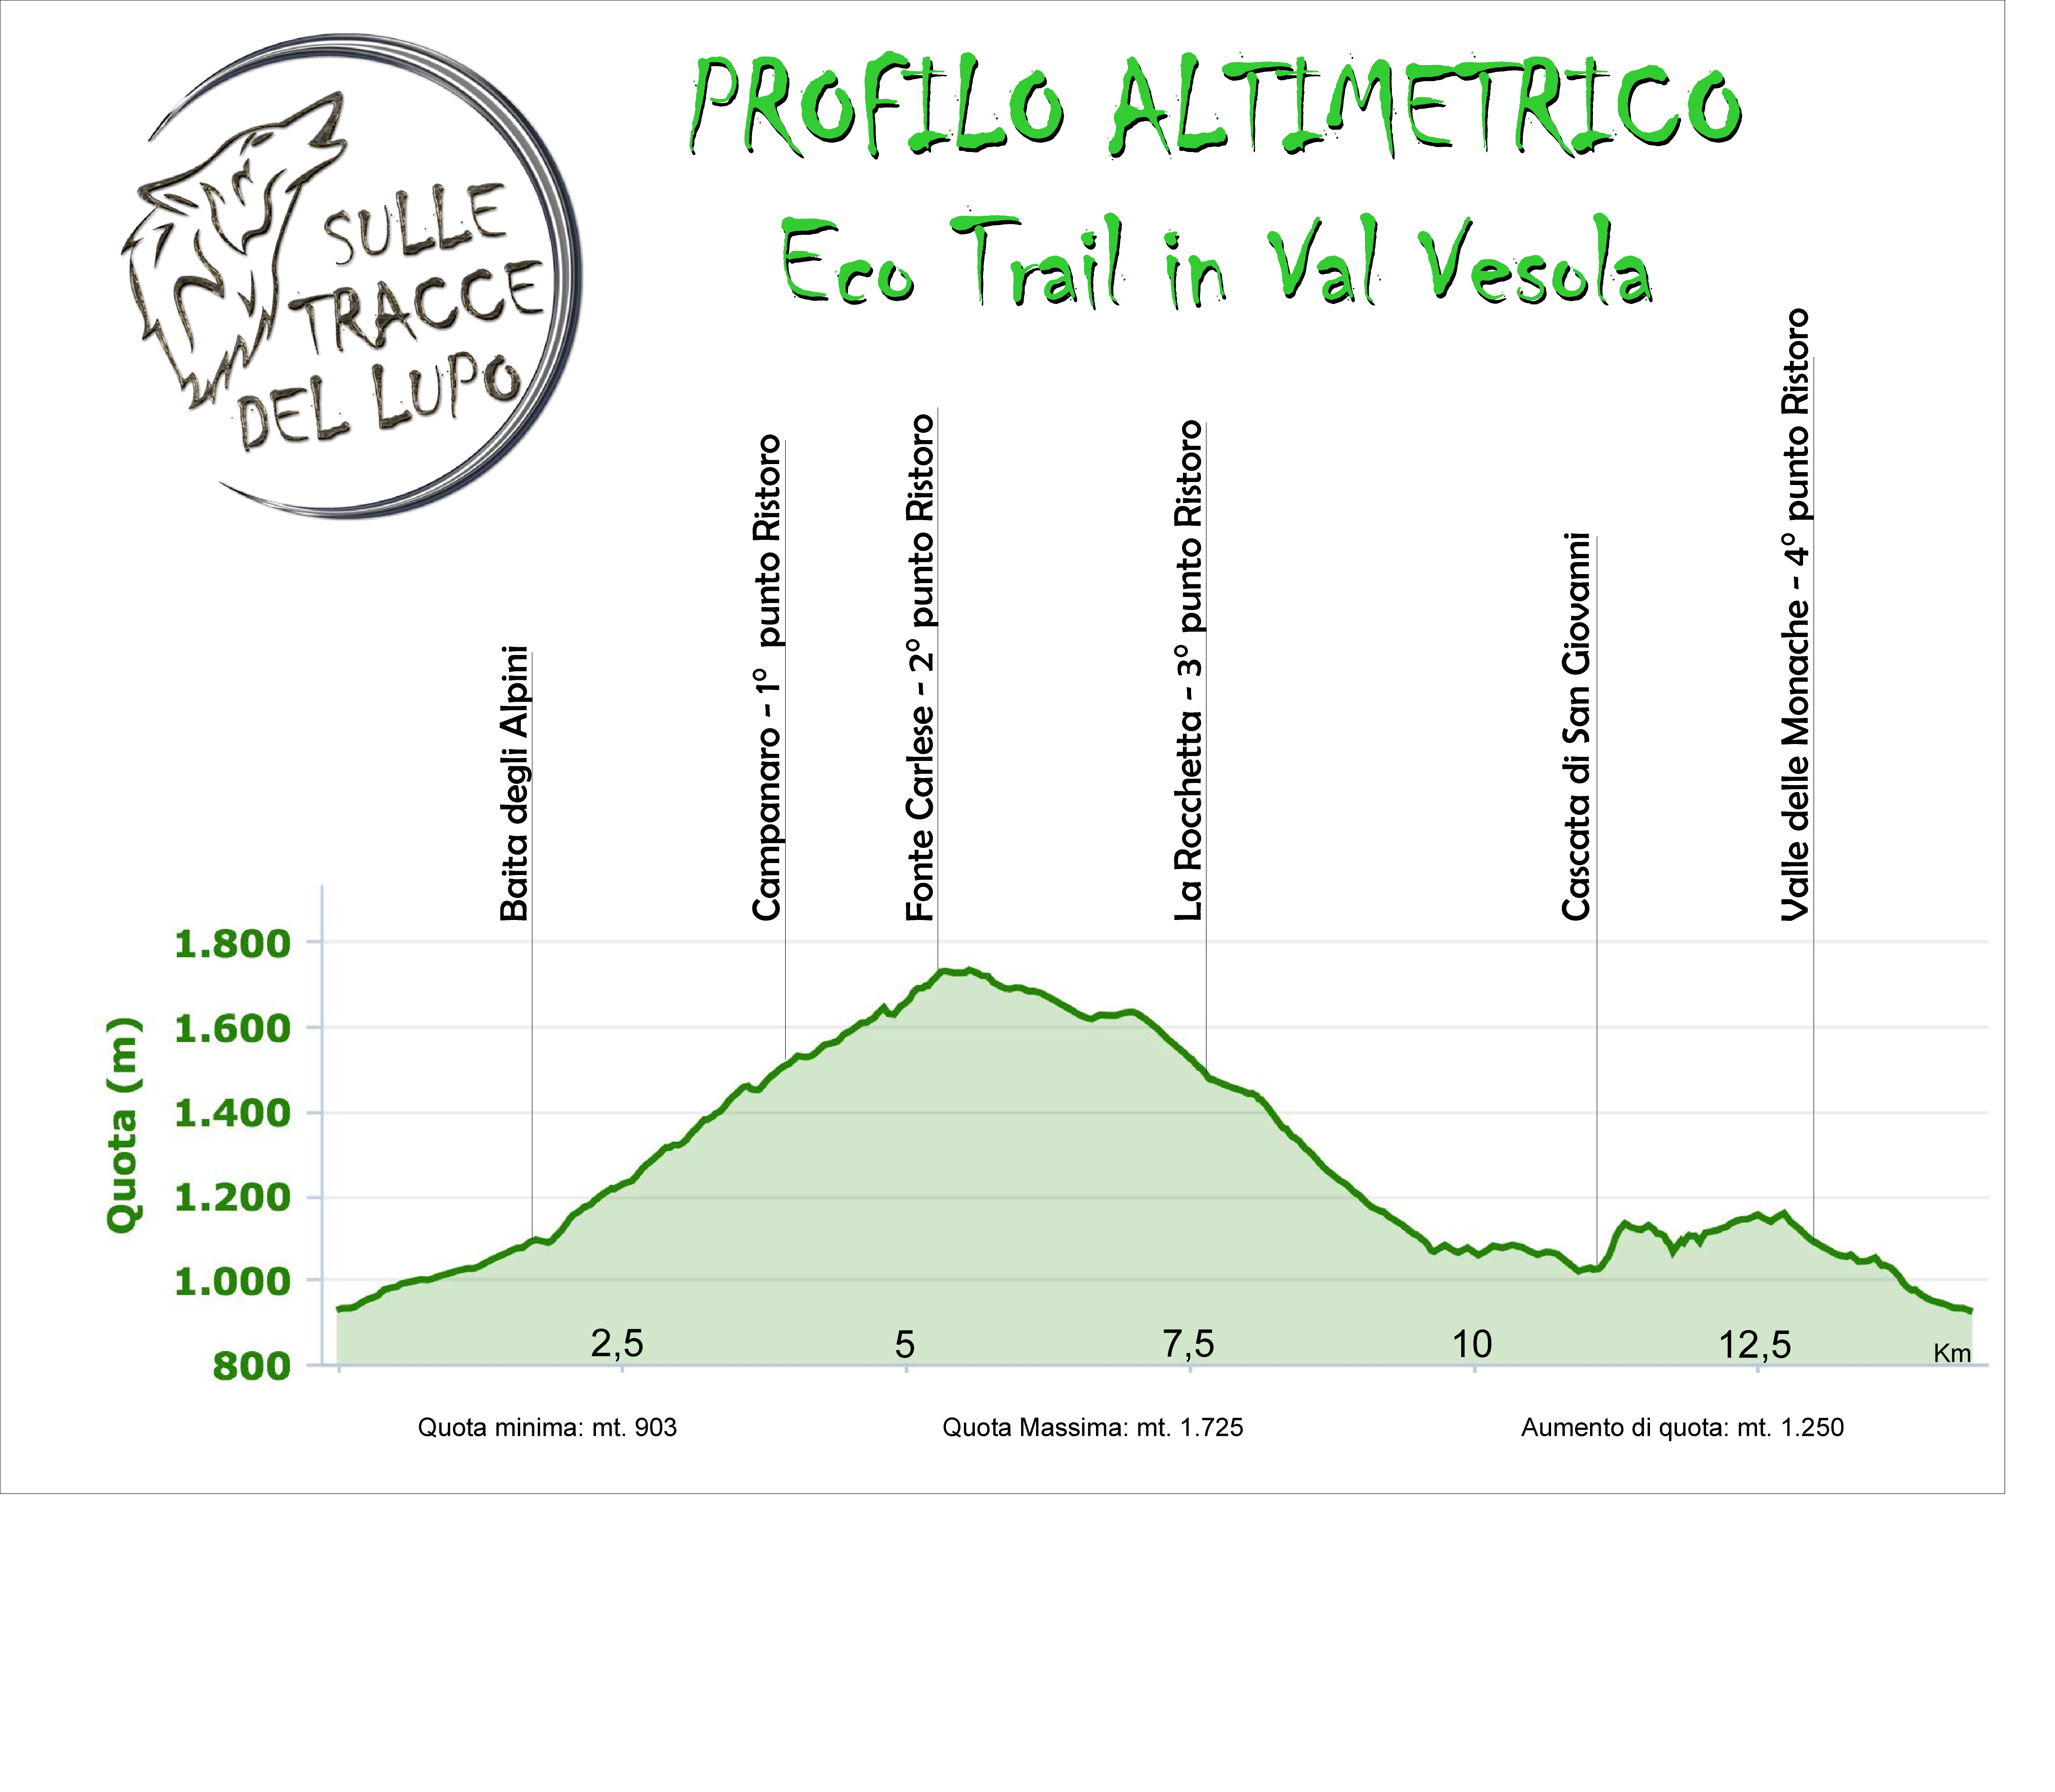 Altimetria Eco Trail in Val Vesola